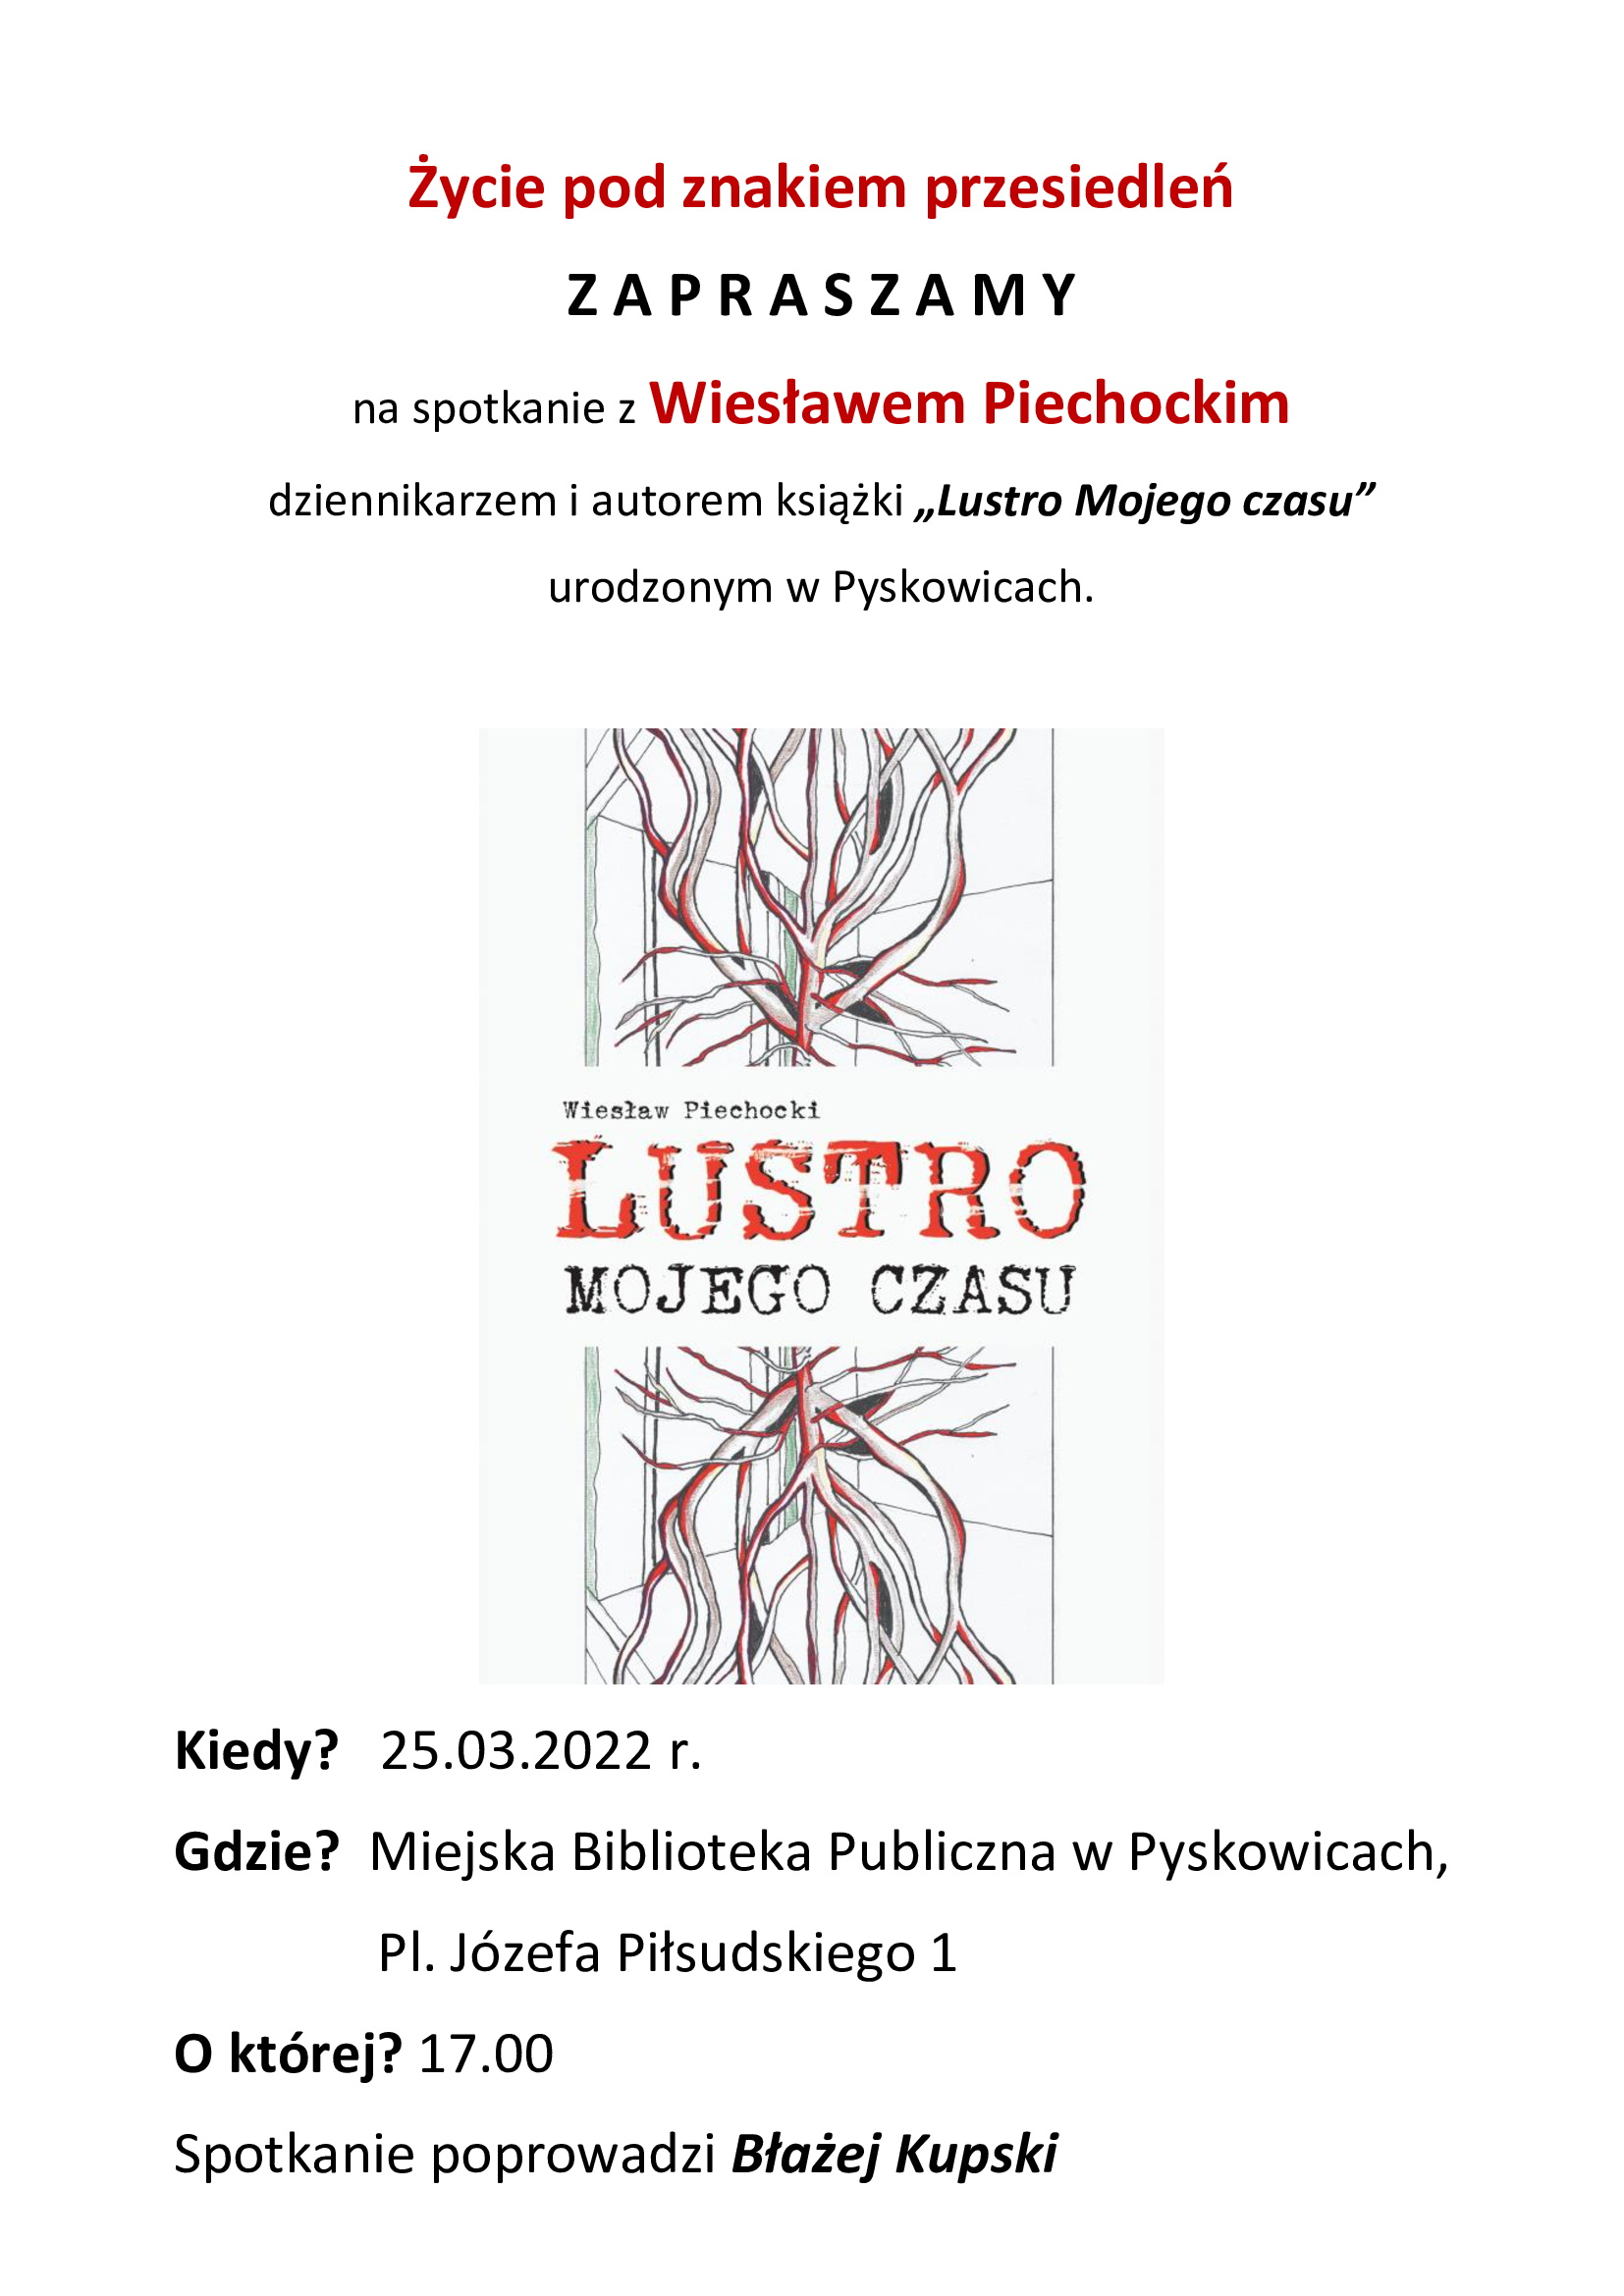 Spotkanie o godzinie 17 dnia 25 marca 2022 roku w MBP Pyskowice Pl. Józefa Piłsudskiego 1